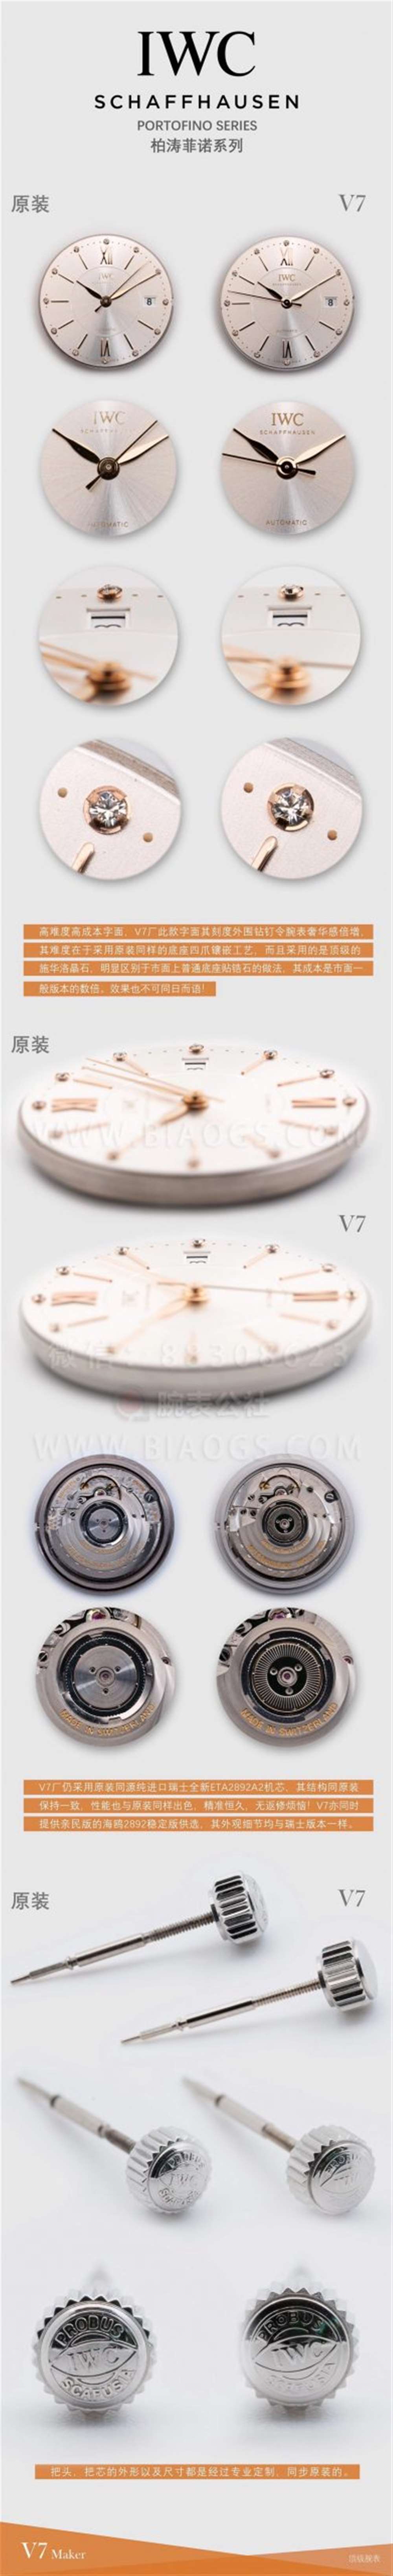 V7厂万国柏涛菲诺37mm女士腕表对比正品评测  第4张